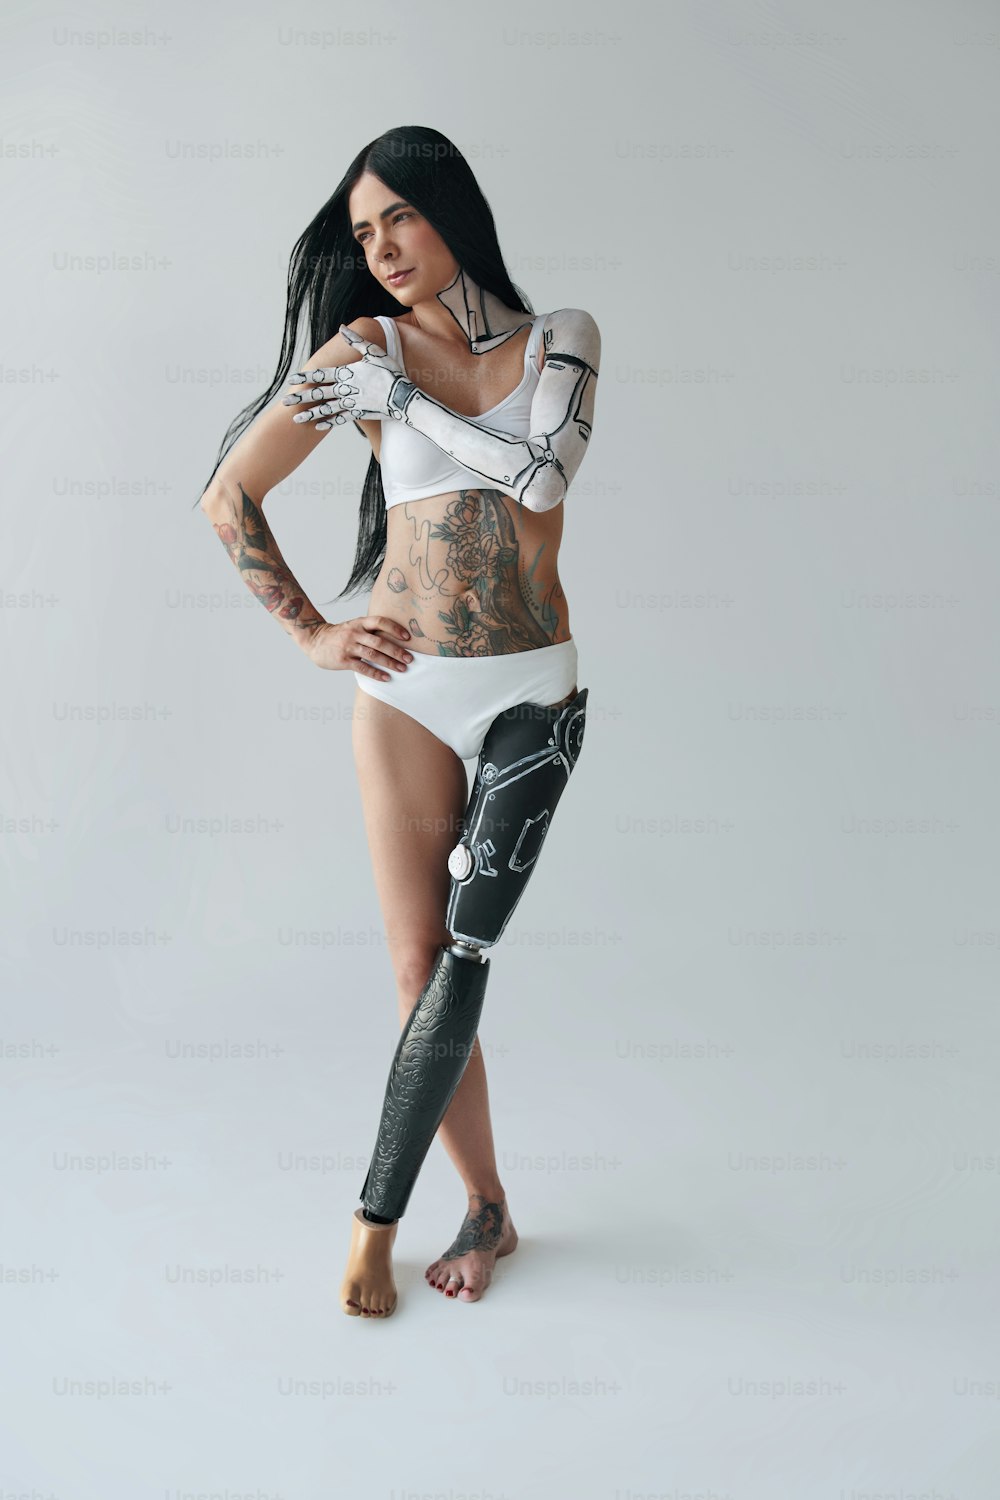 Vista de cuerpo entero de la mujer tatuada con pierna artificial y arte corporal cibernético posando en el estudio. Concepto de apariencia inusual. Foto de archivo